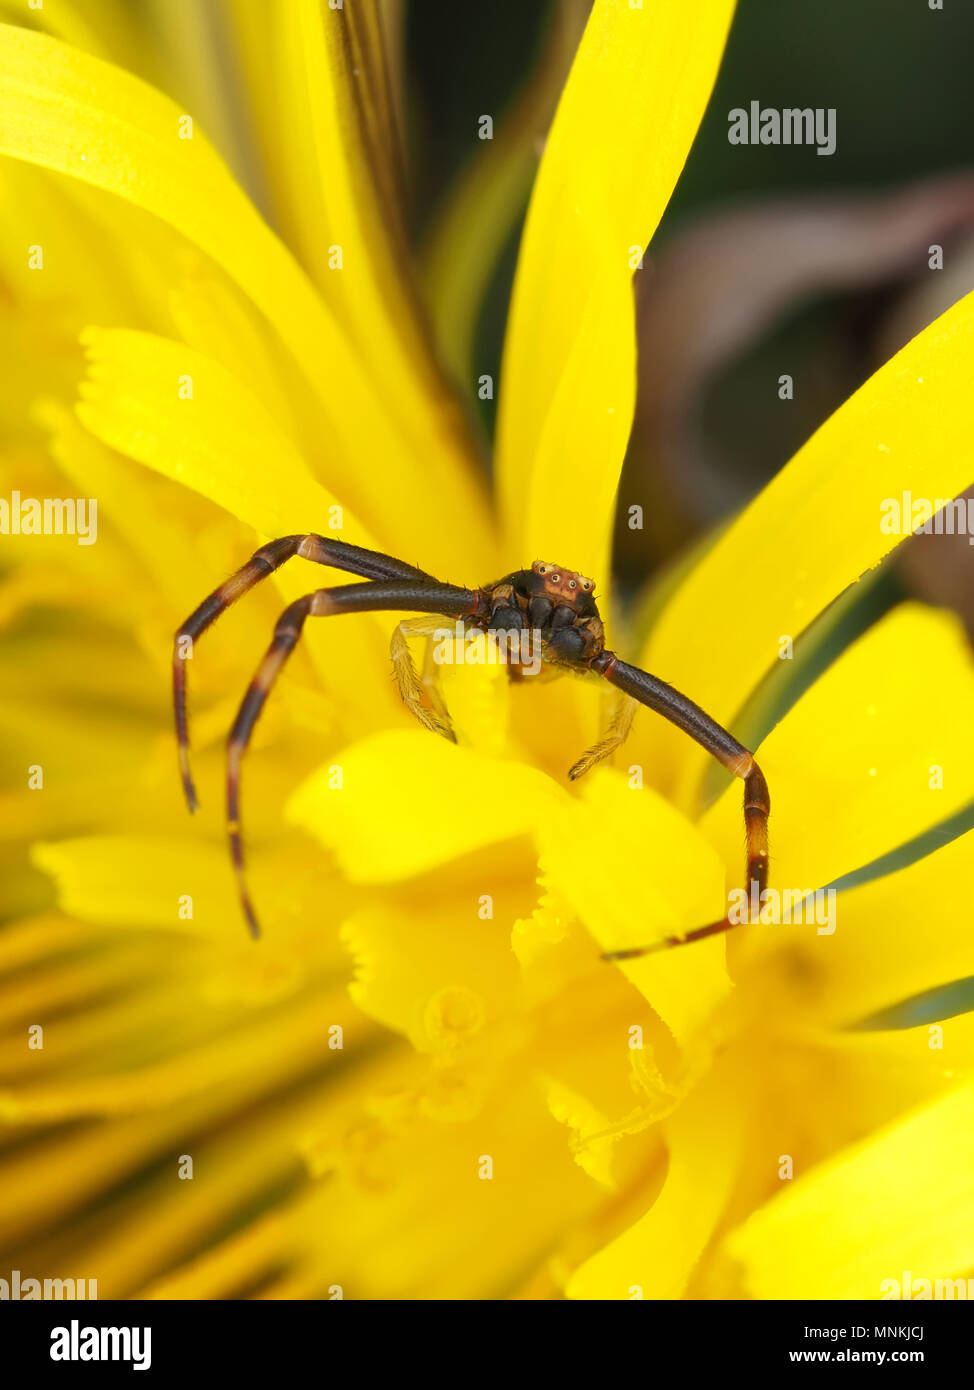 La verge d'homme minuscule araignée crabe Misumena vatia sur un pissenlit Banque D'Images